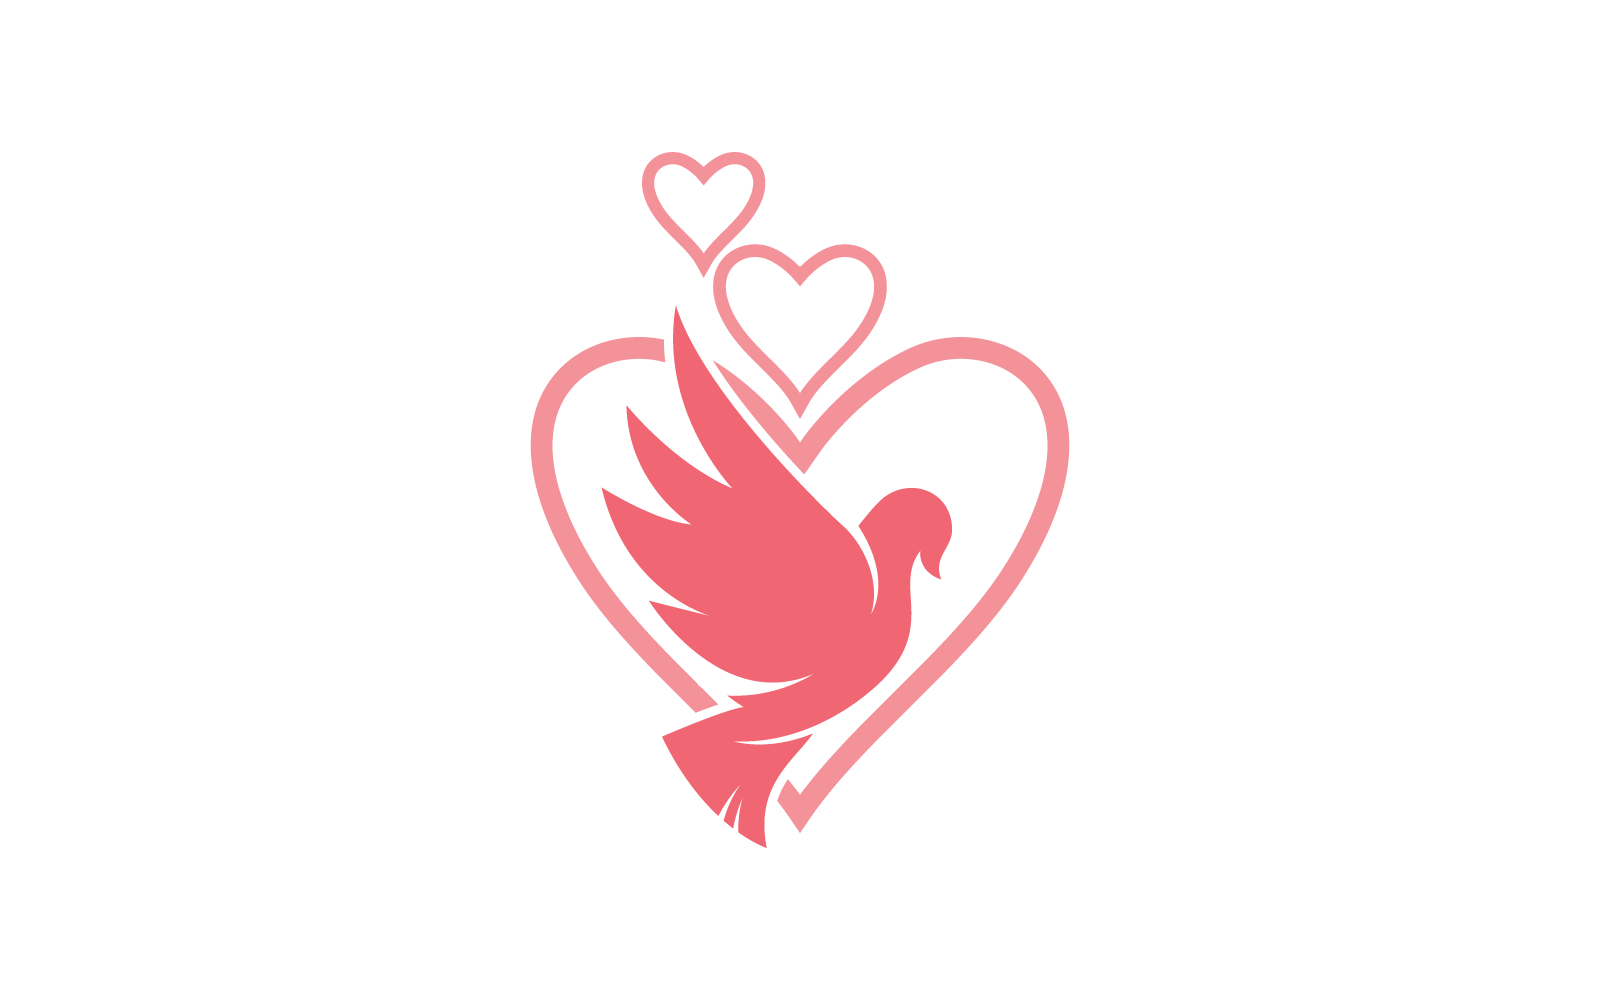 Dove bird logo illustration vector design Logo Template